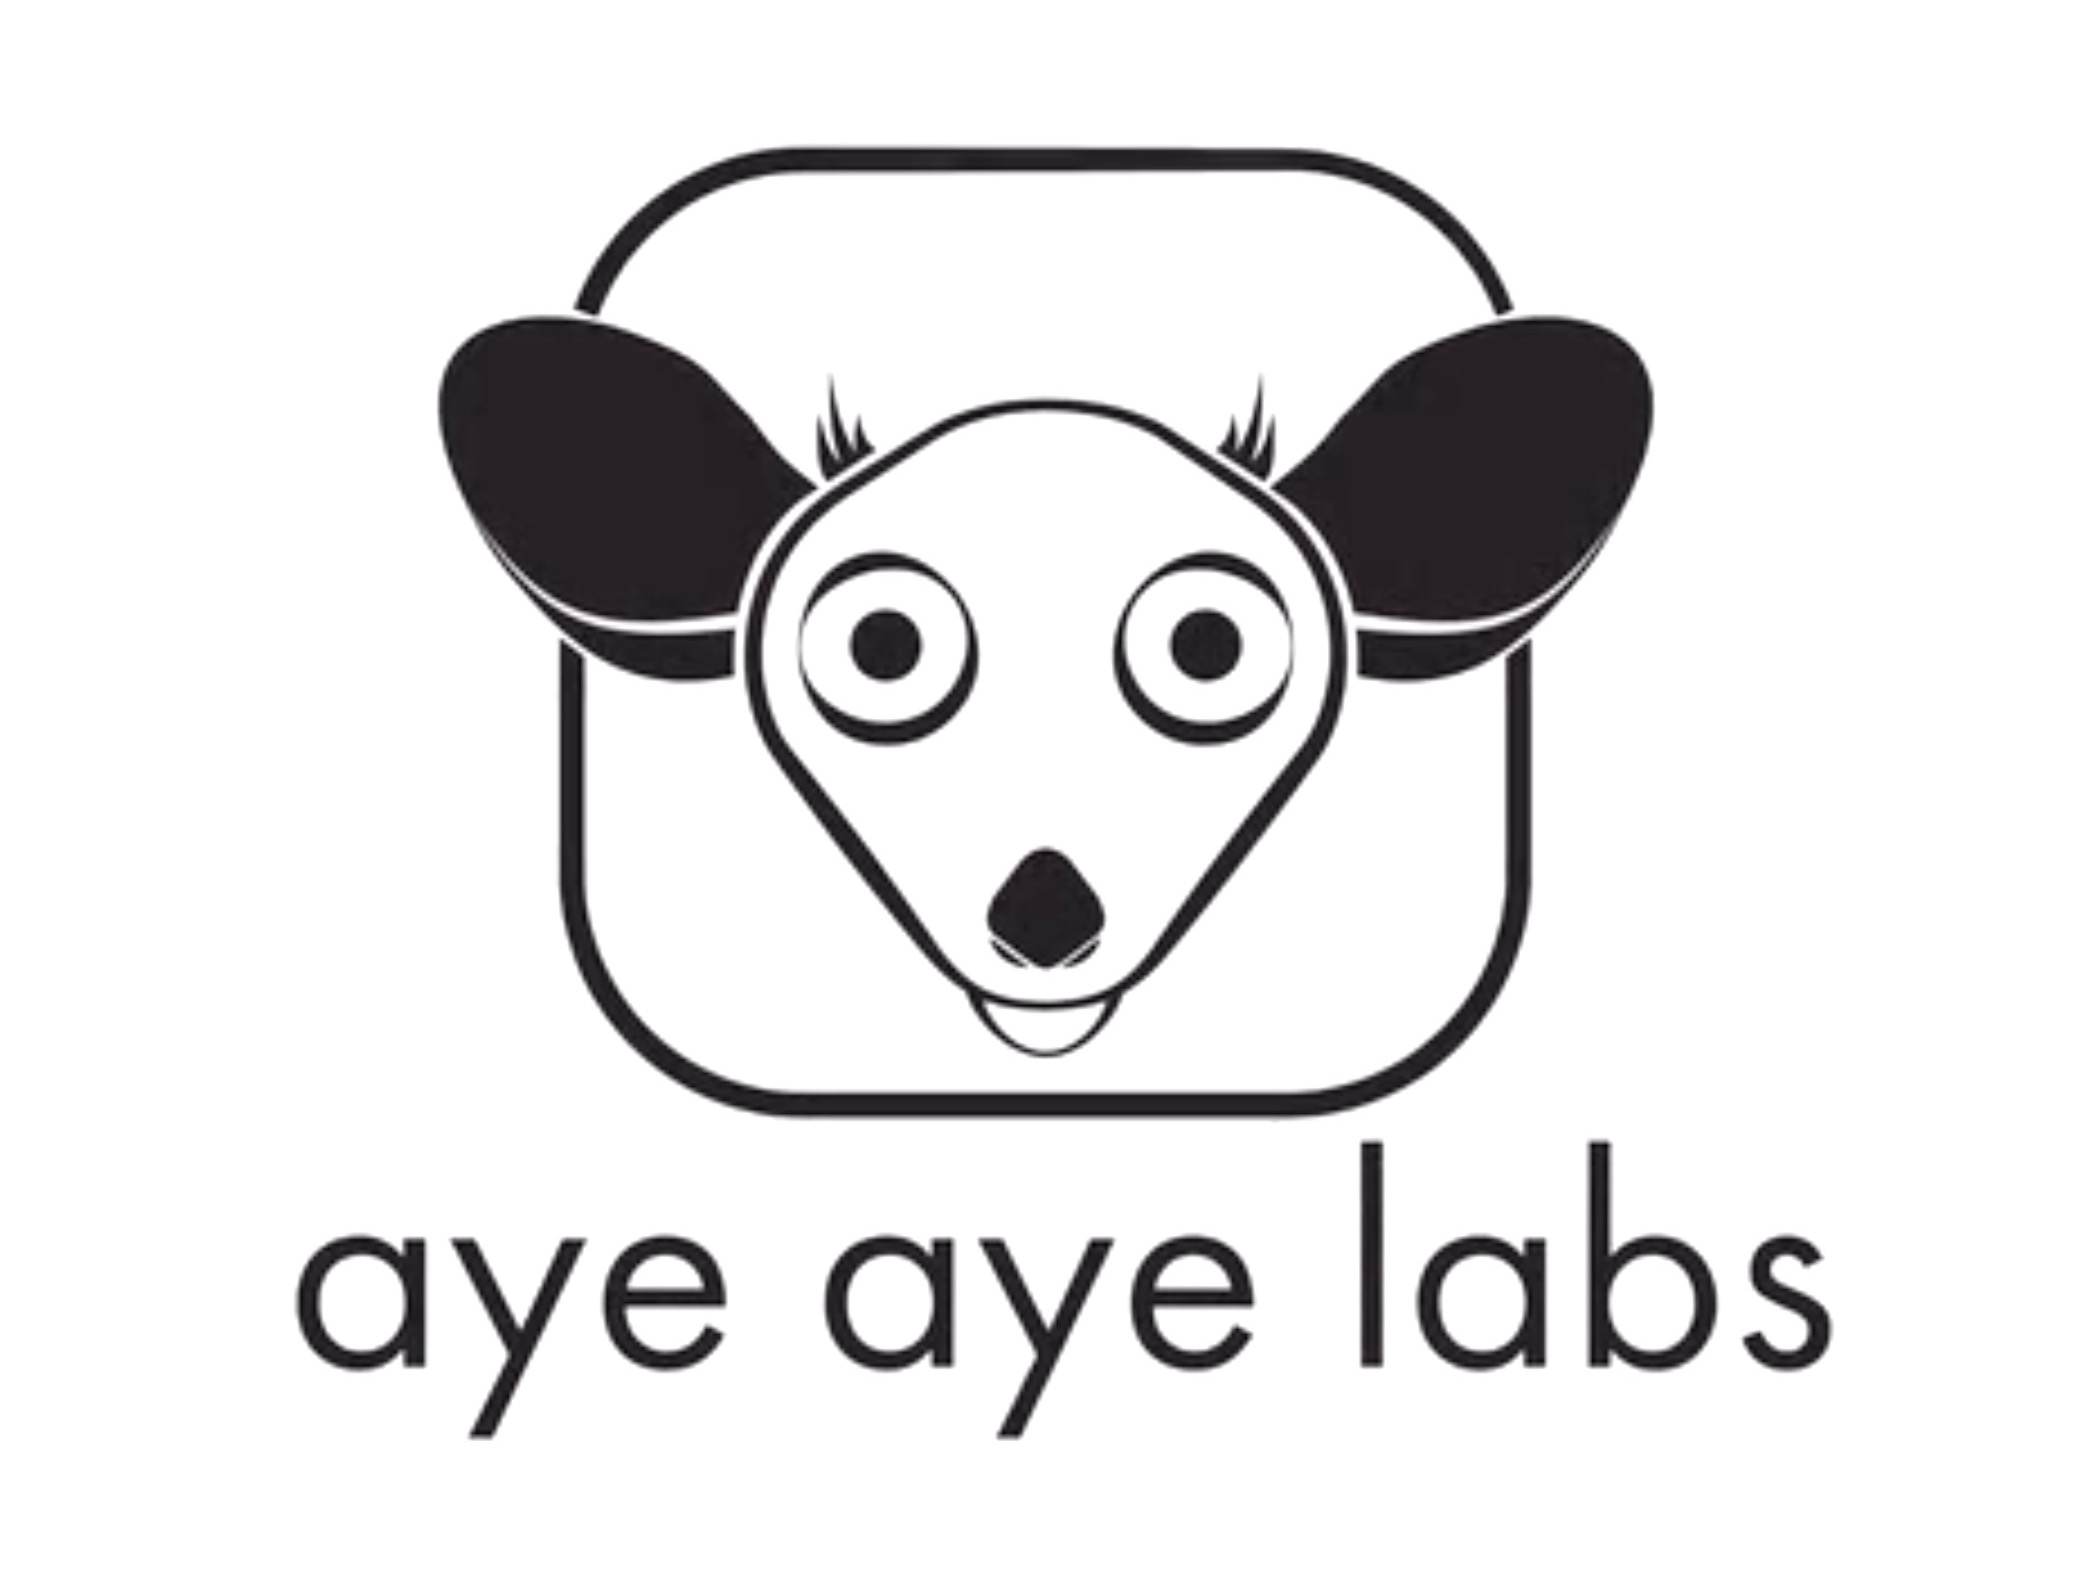  aye aye labs logo 